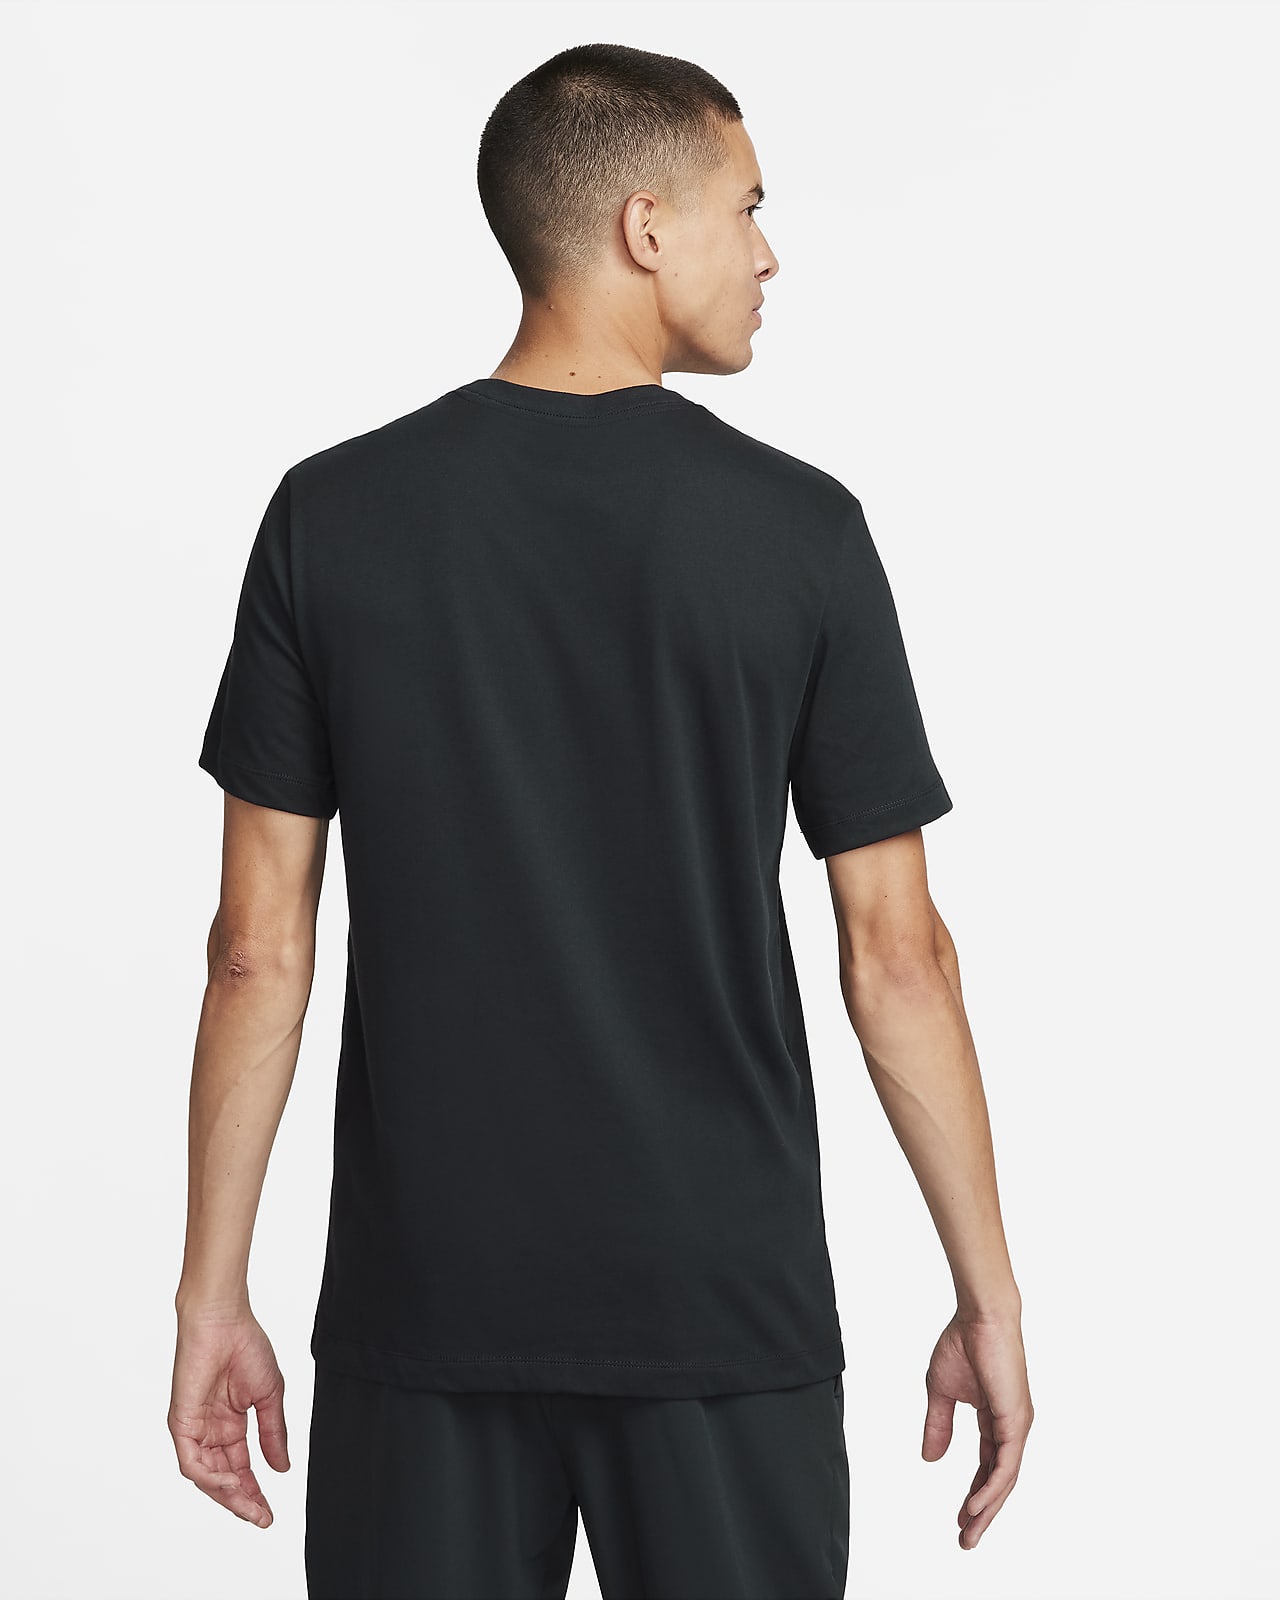 Nike Dri-Fit Men's Baseball T-Shirt